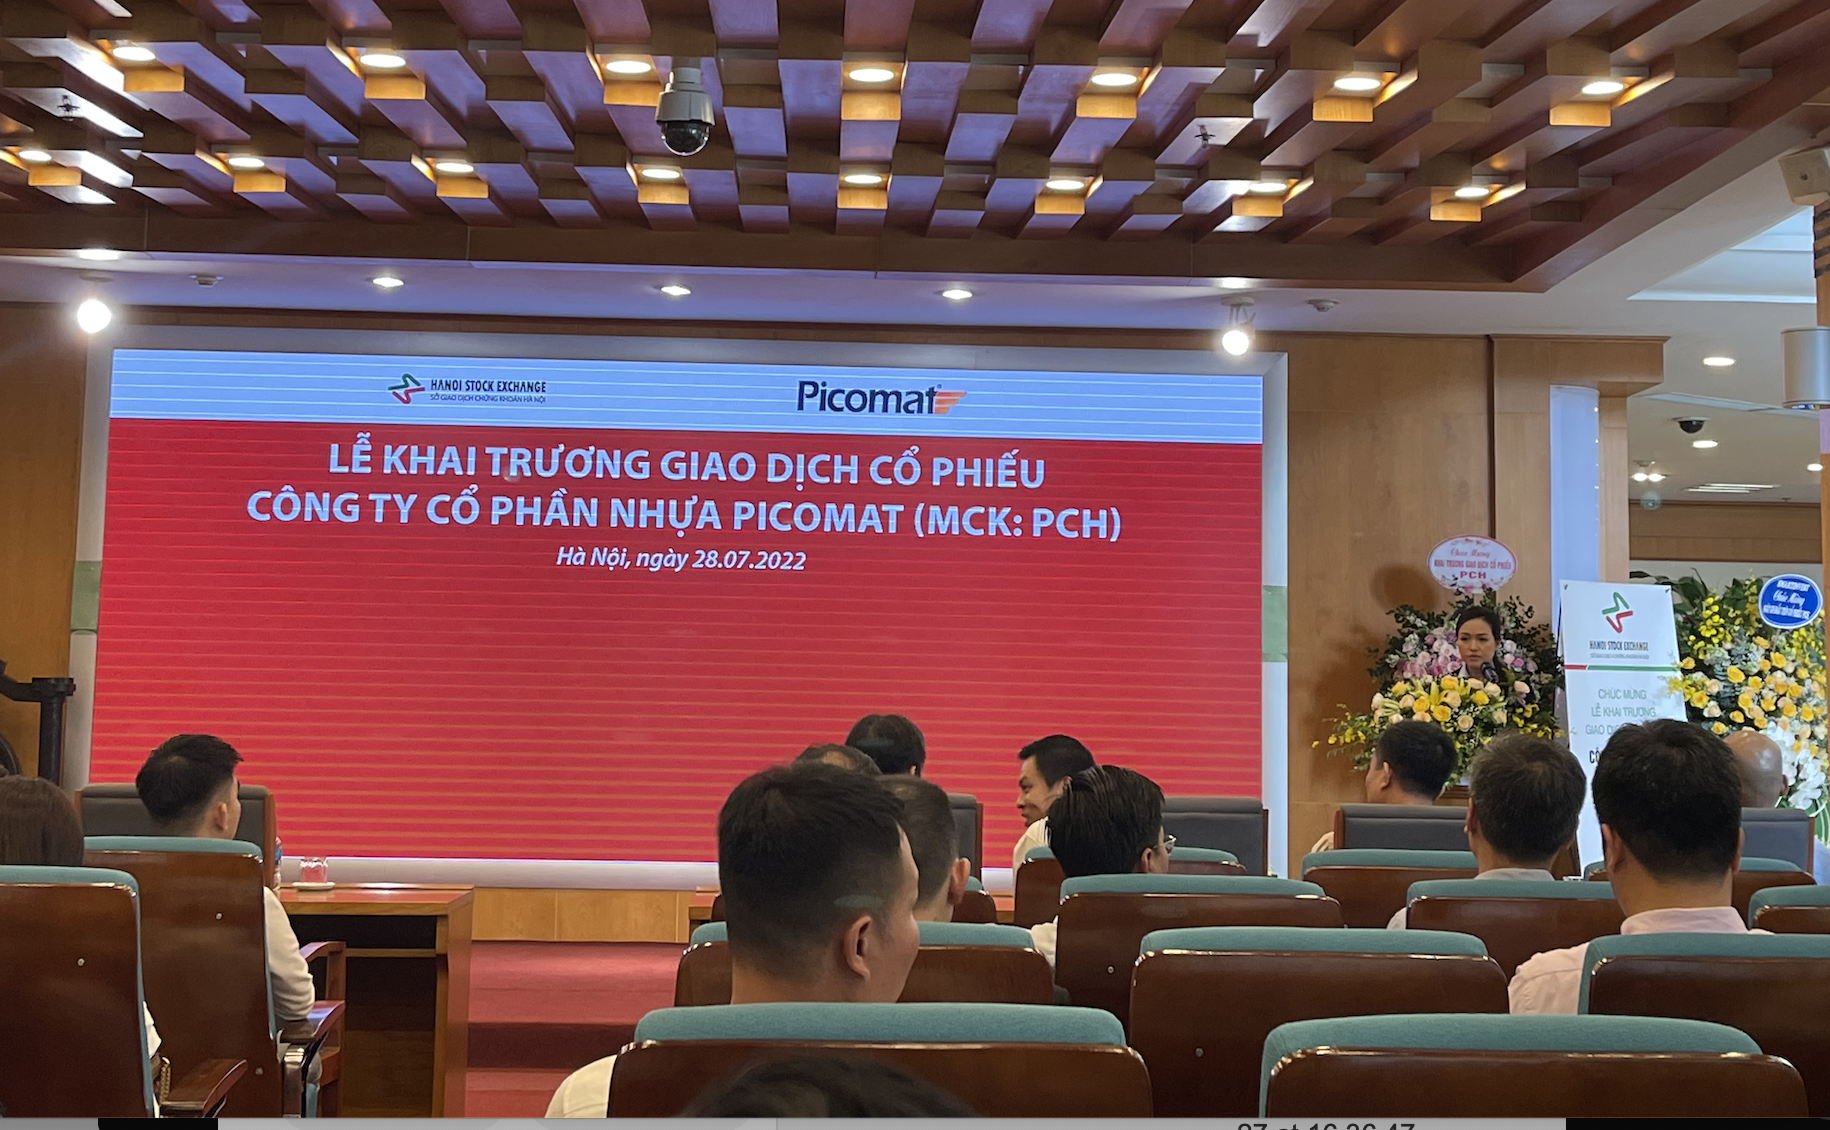 Nhựa Picomat (PCH) là doanh nghiệp thứ 5 niêm yết sàn Hà Nội năm 2022 - Ảnh 1.